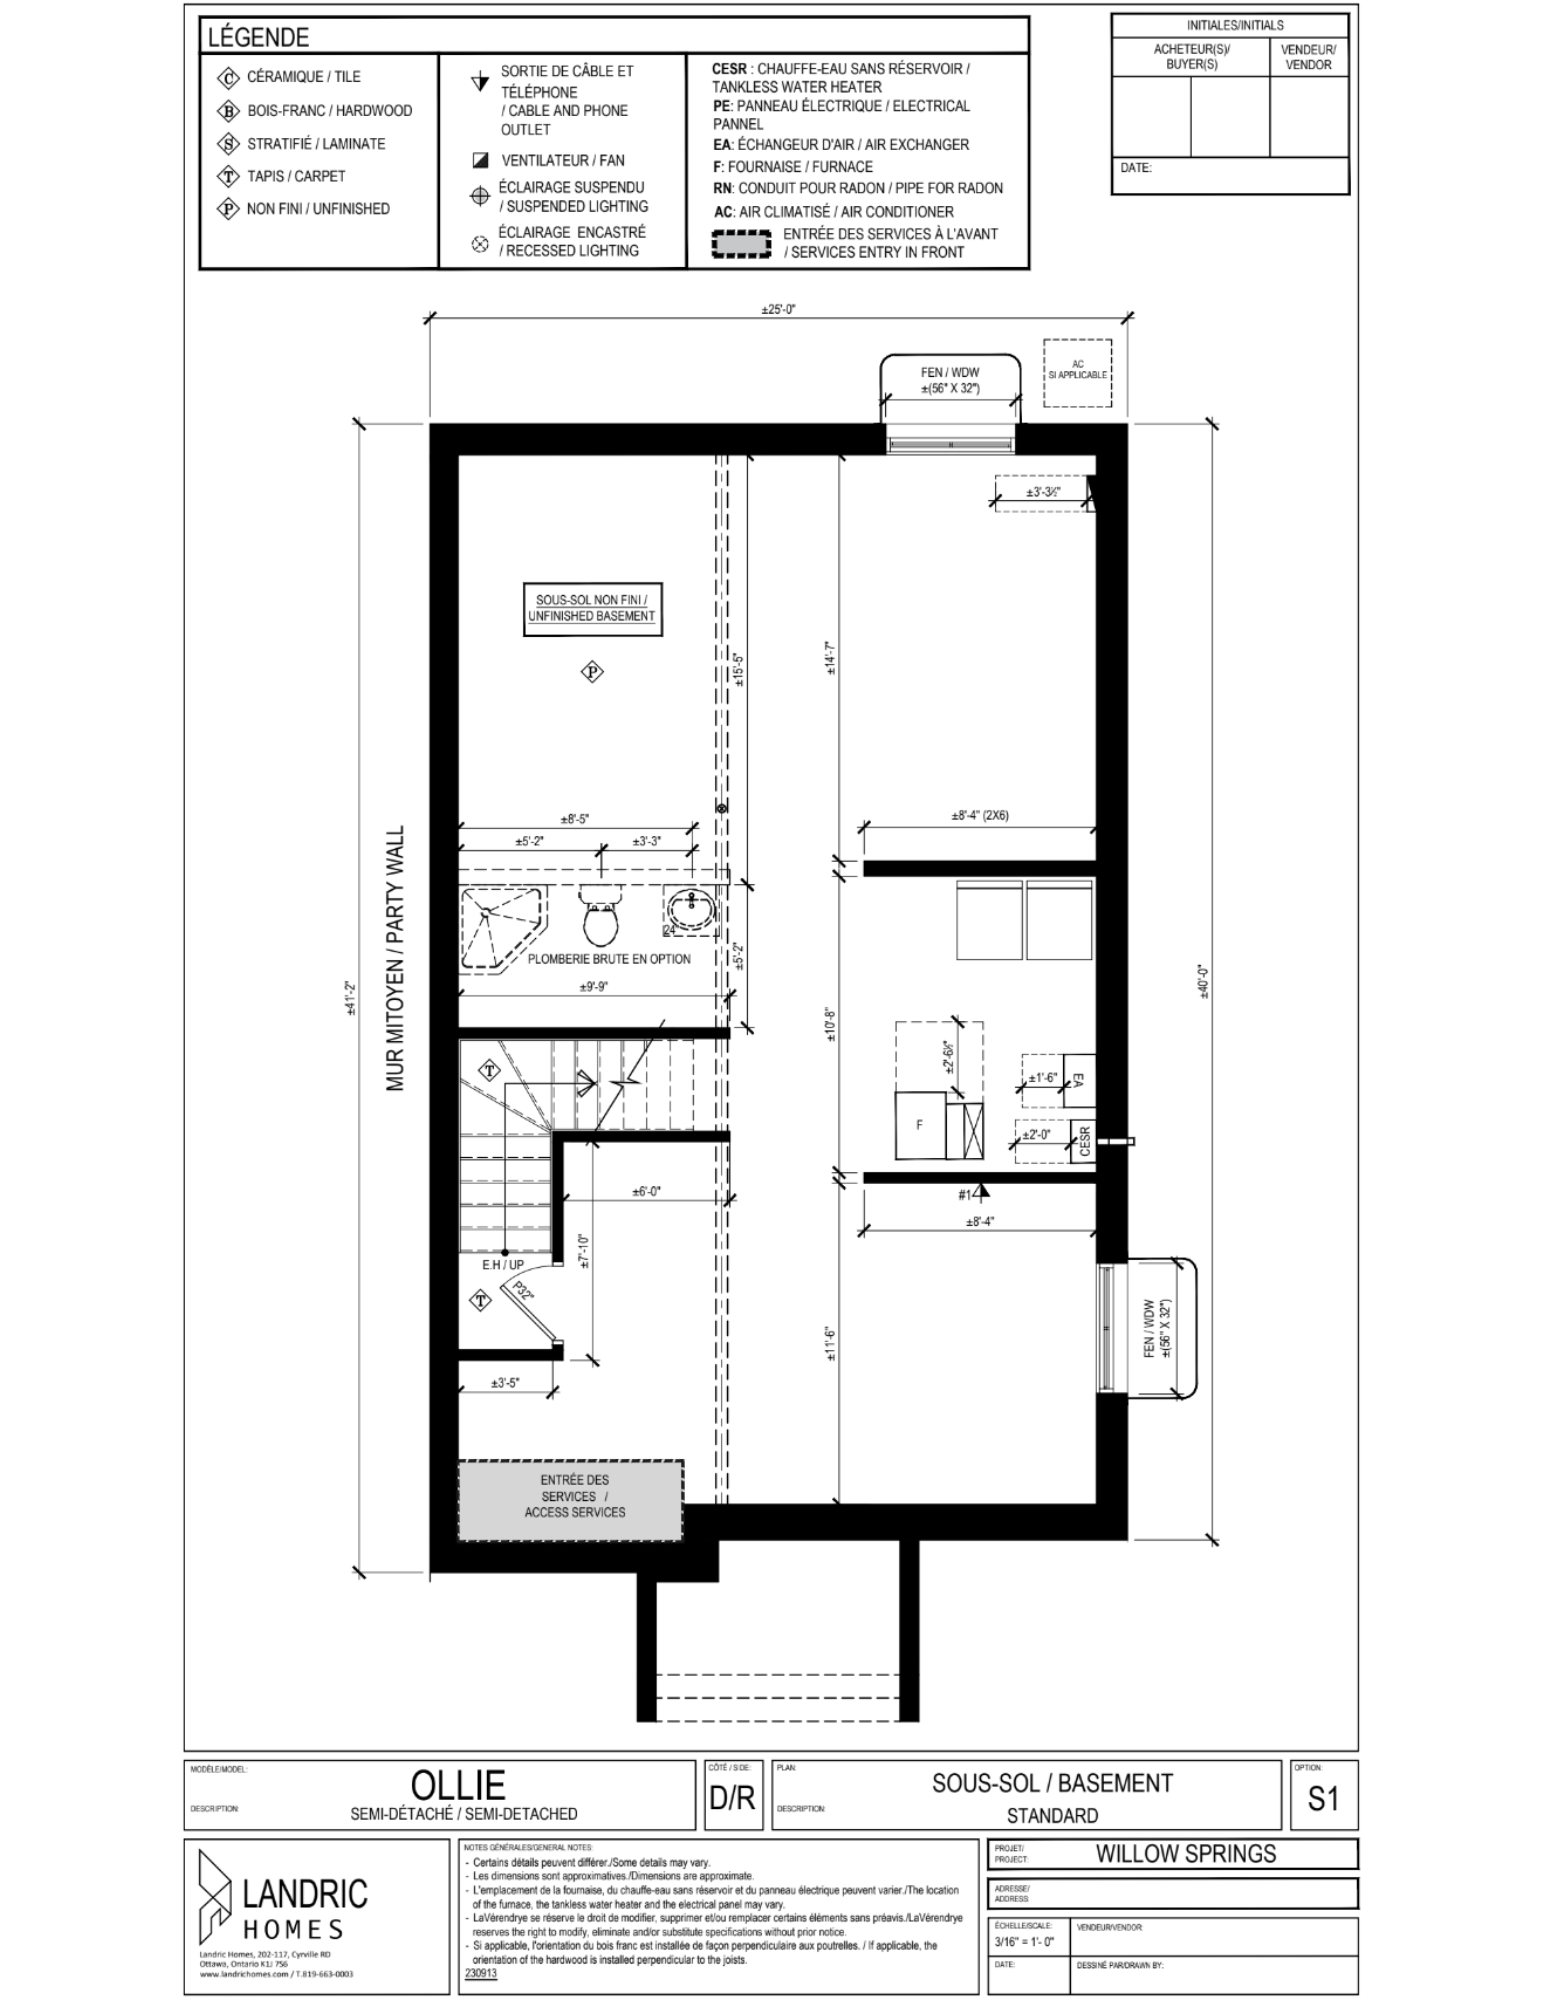 Willow Springs, Limoges floor plans (8)